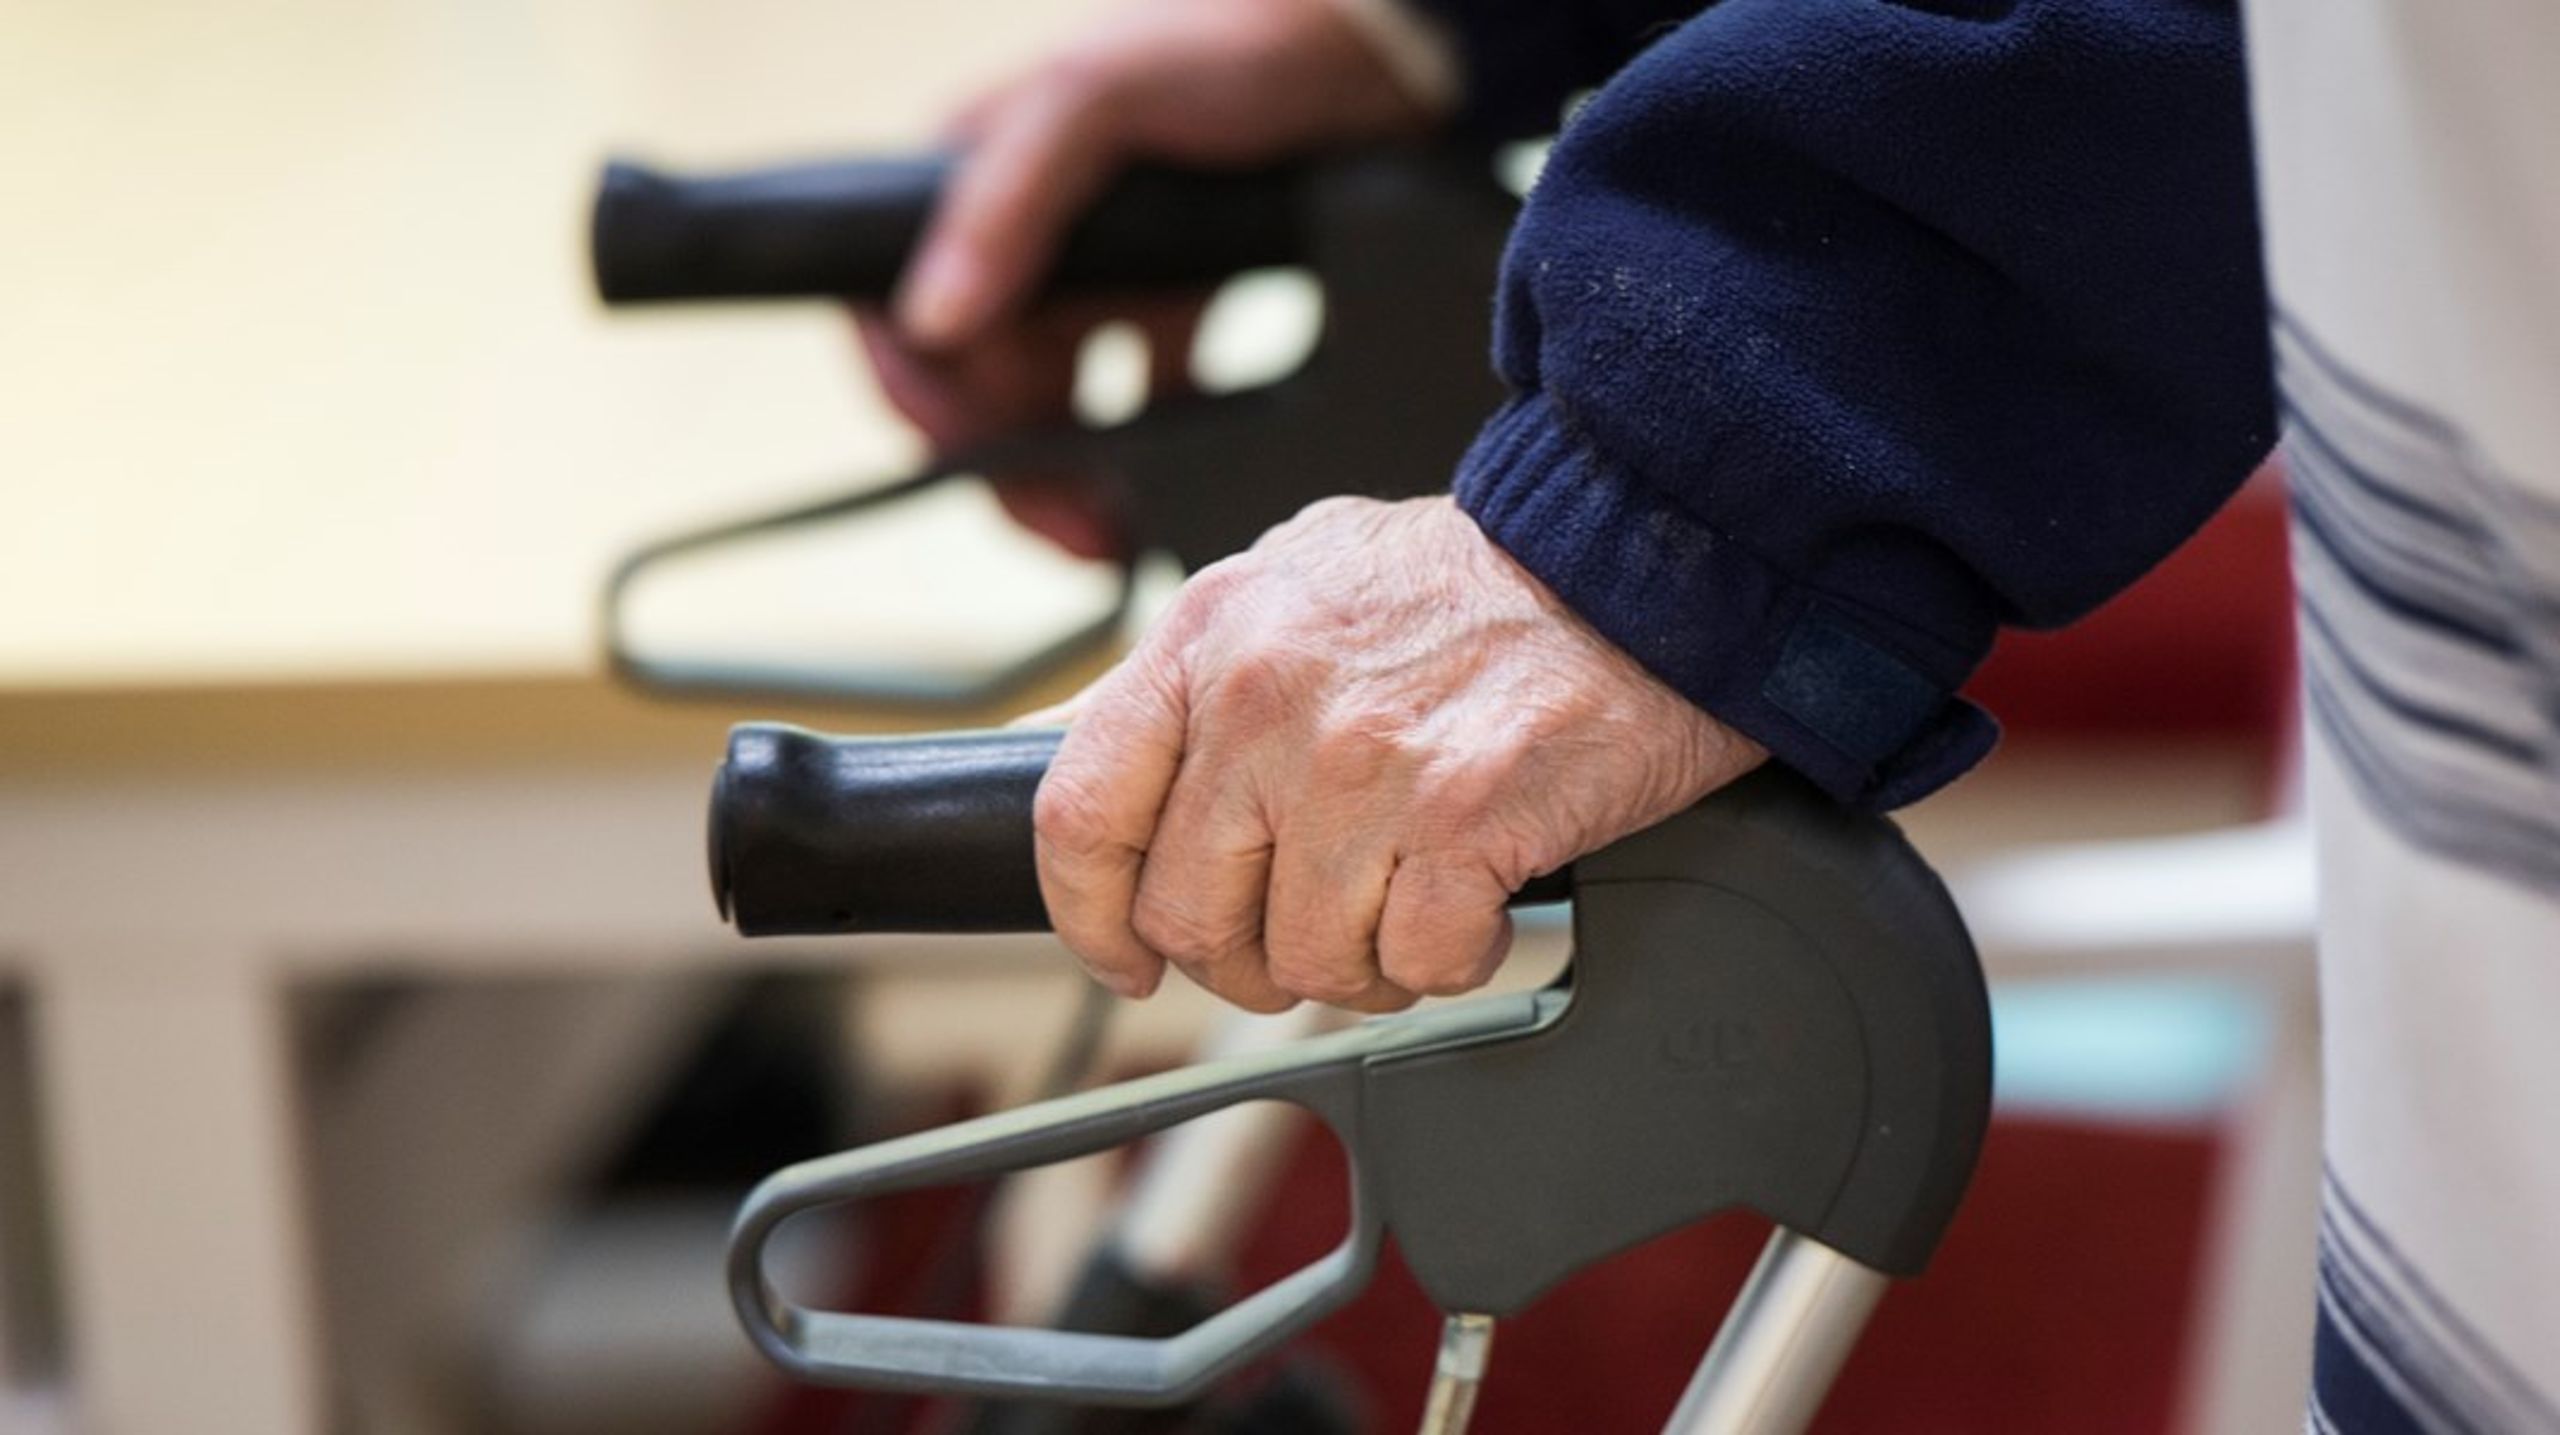 Undersköterskeutbildning bör ligga till grund för personalen som ska ge den dagliga och allmänna vården till äldre, enligt Lars-Olof Wahlund på Demensförbundet.